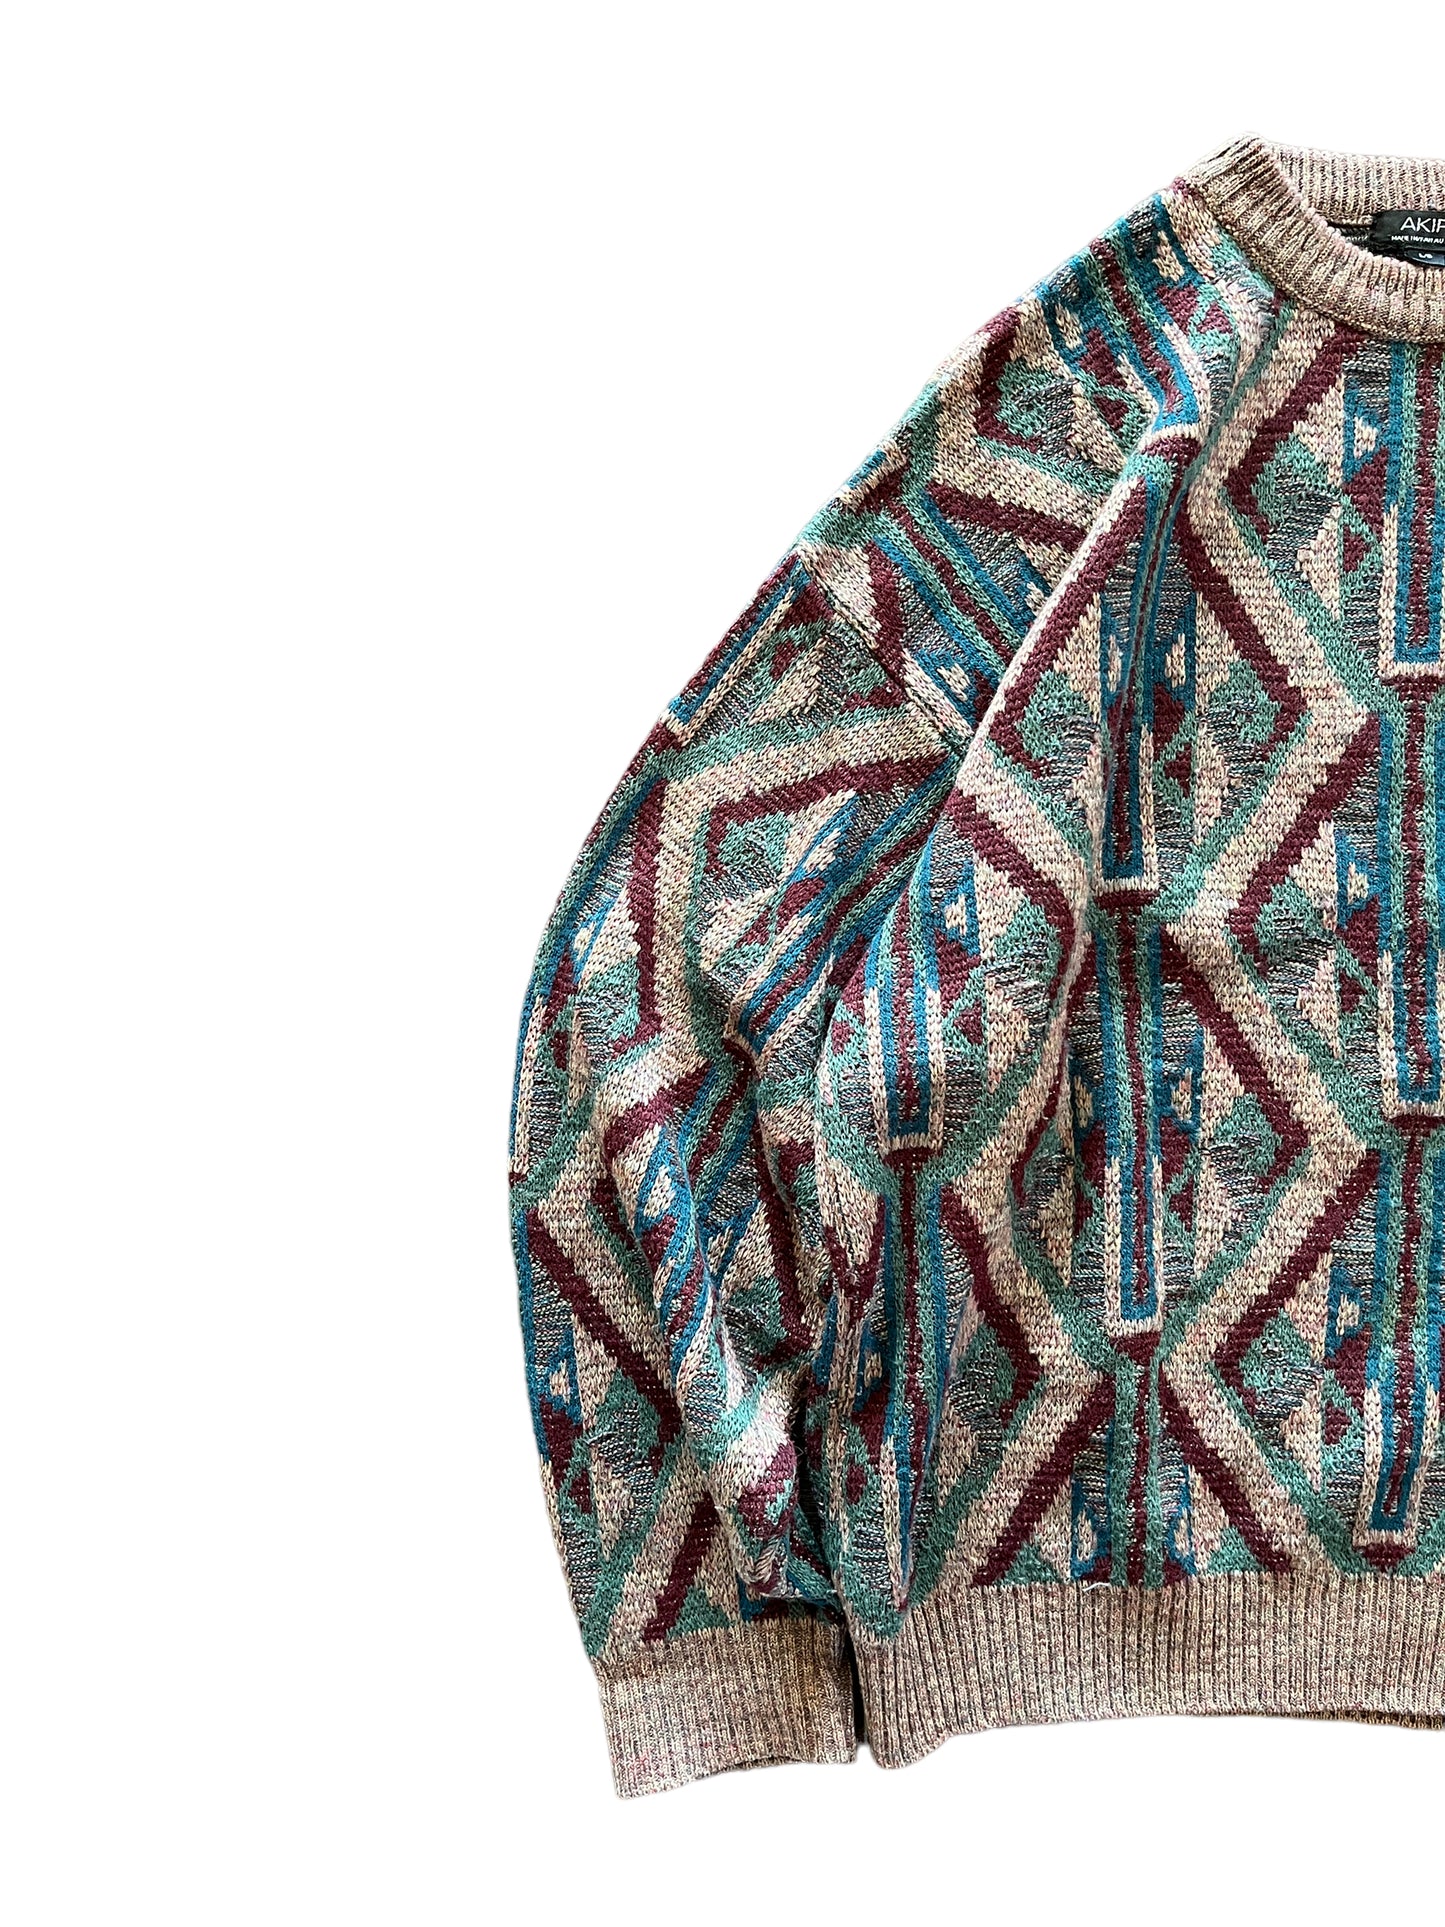 Vintage Akira Knit Sweater